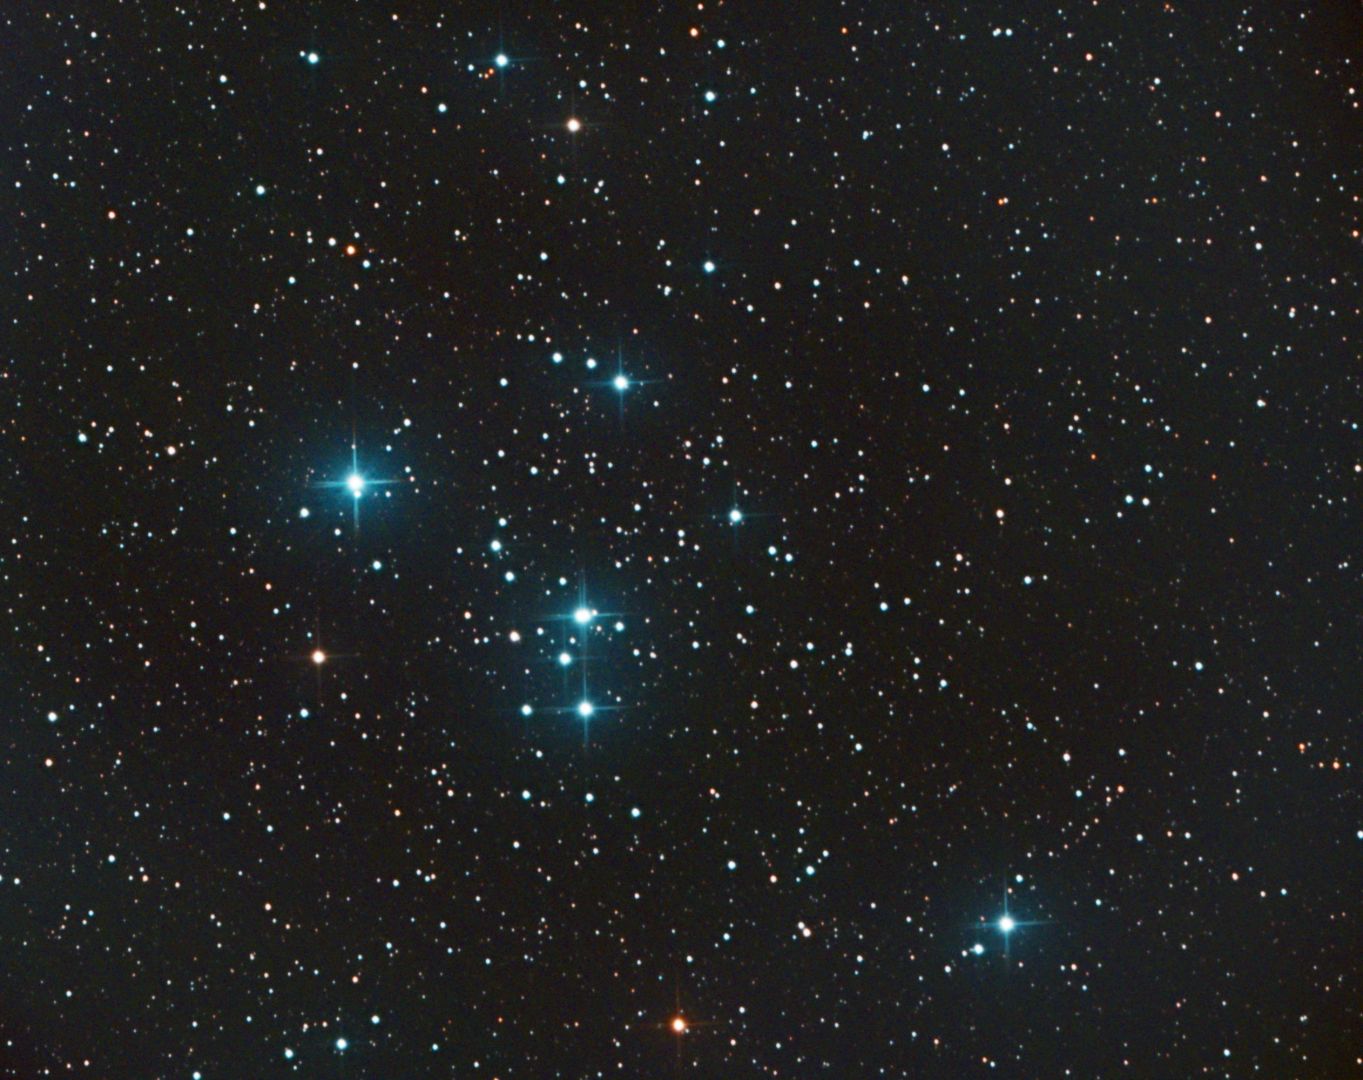 Offener Sternhaufen M47.jpg